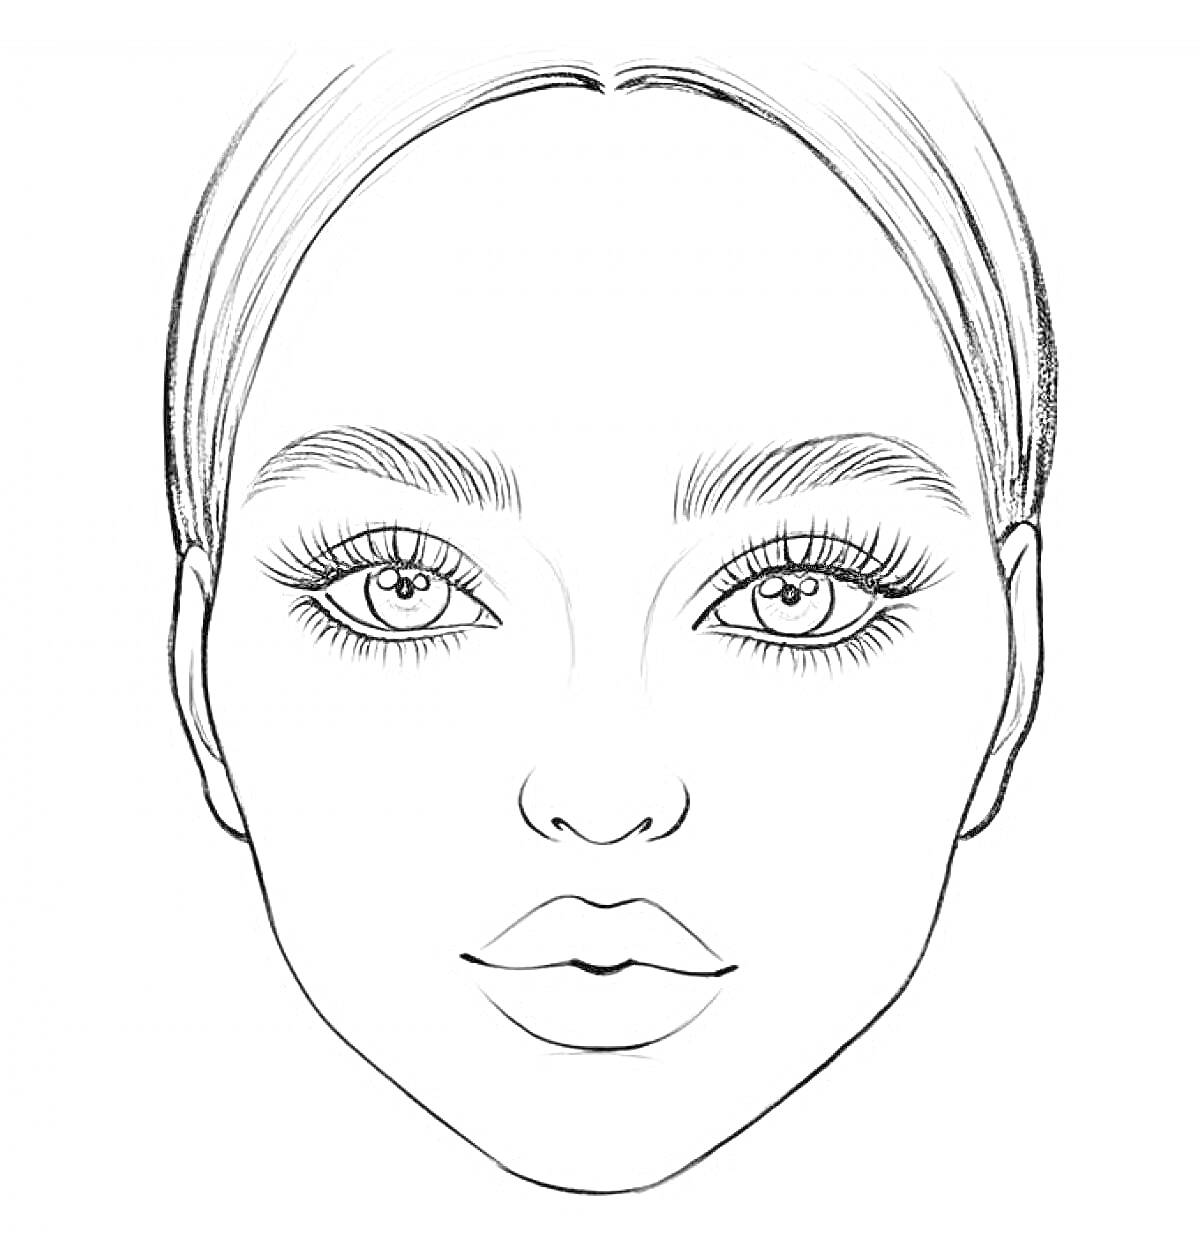 Раскраска Иллюстрация лица для макияжа с волосами, бровями, глазами, ресницами, носом и губами.